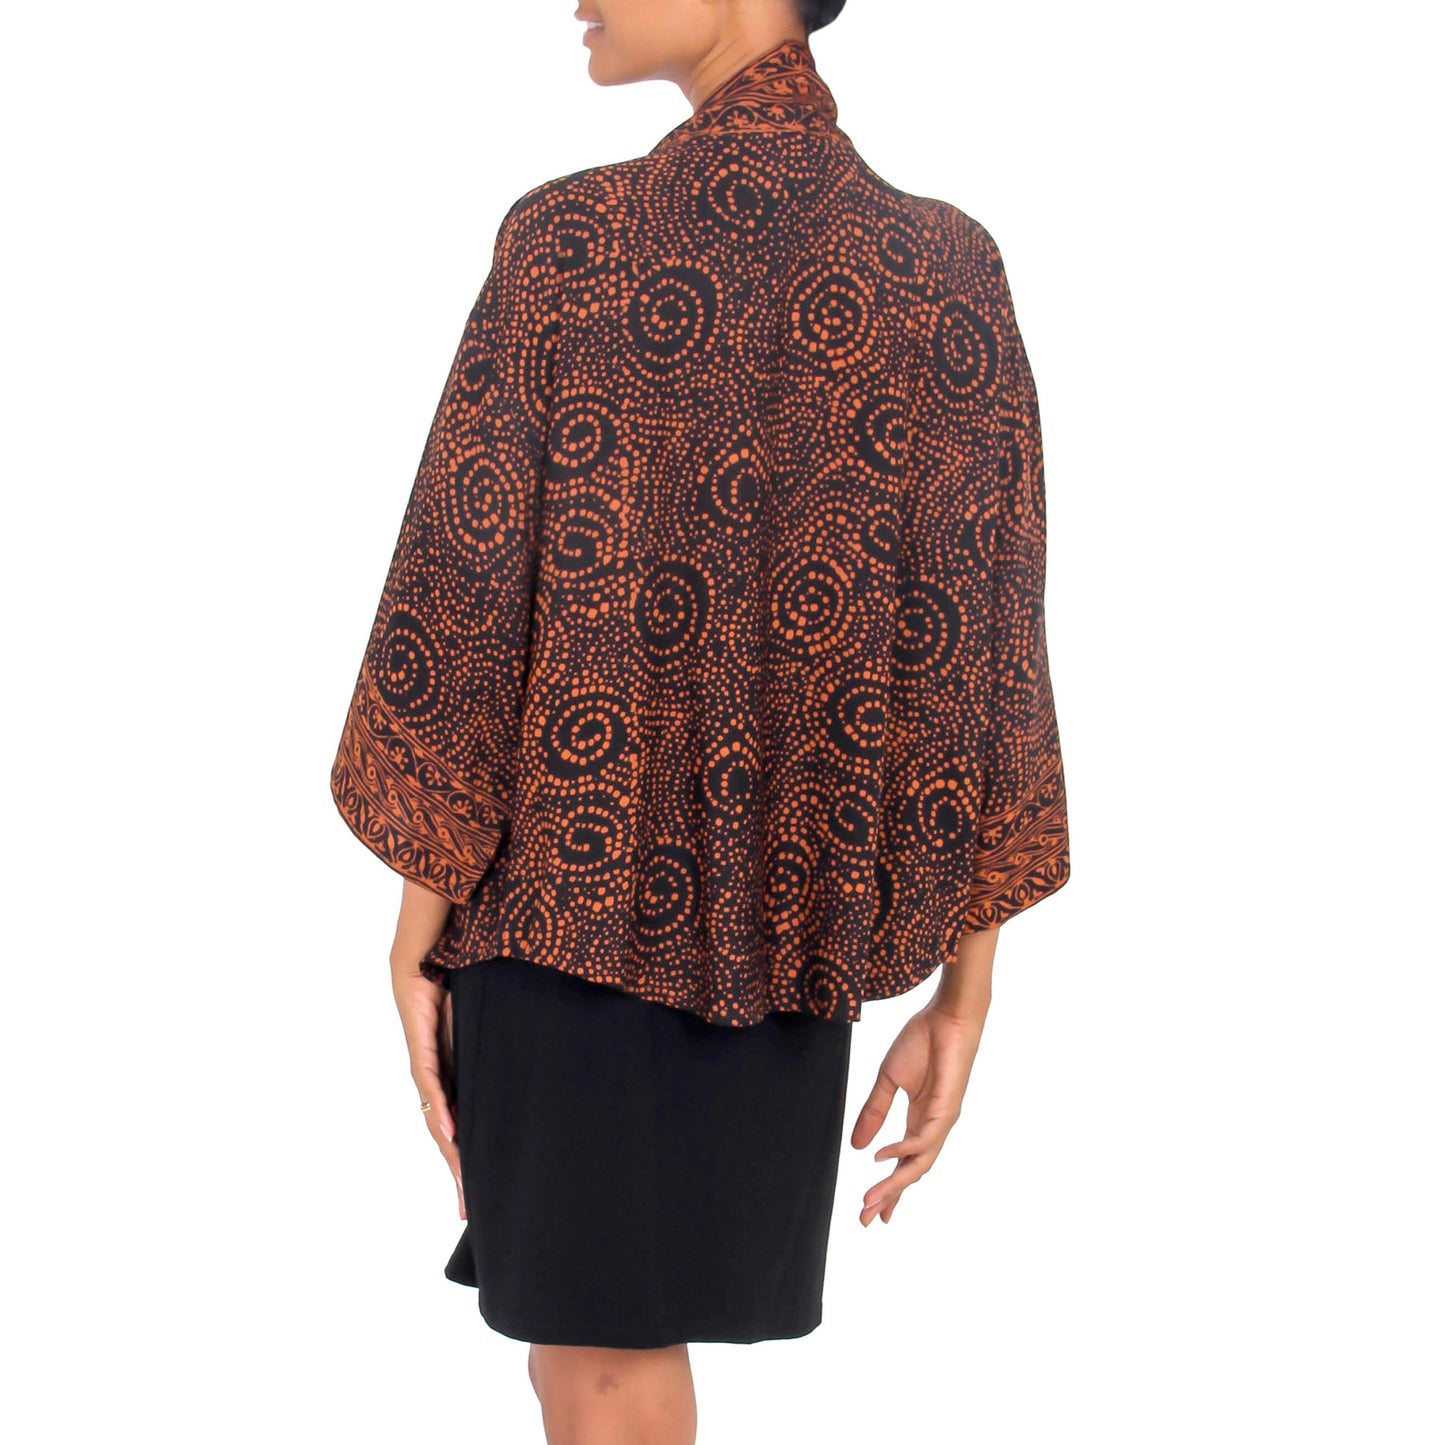 Javanese Brown Batik Jacket